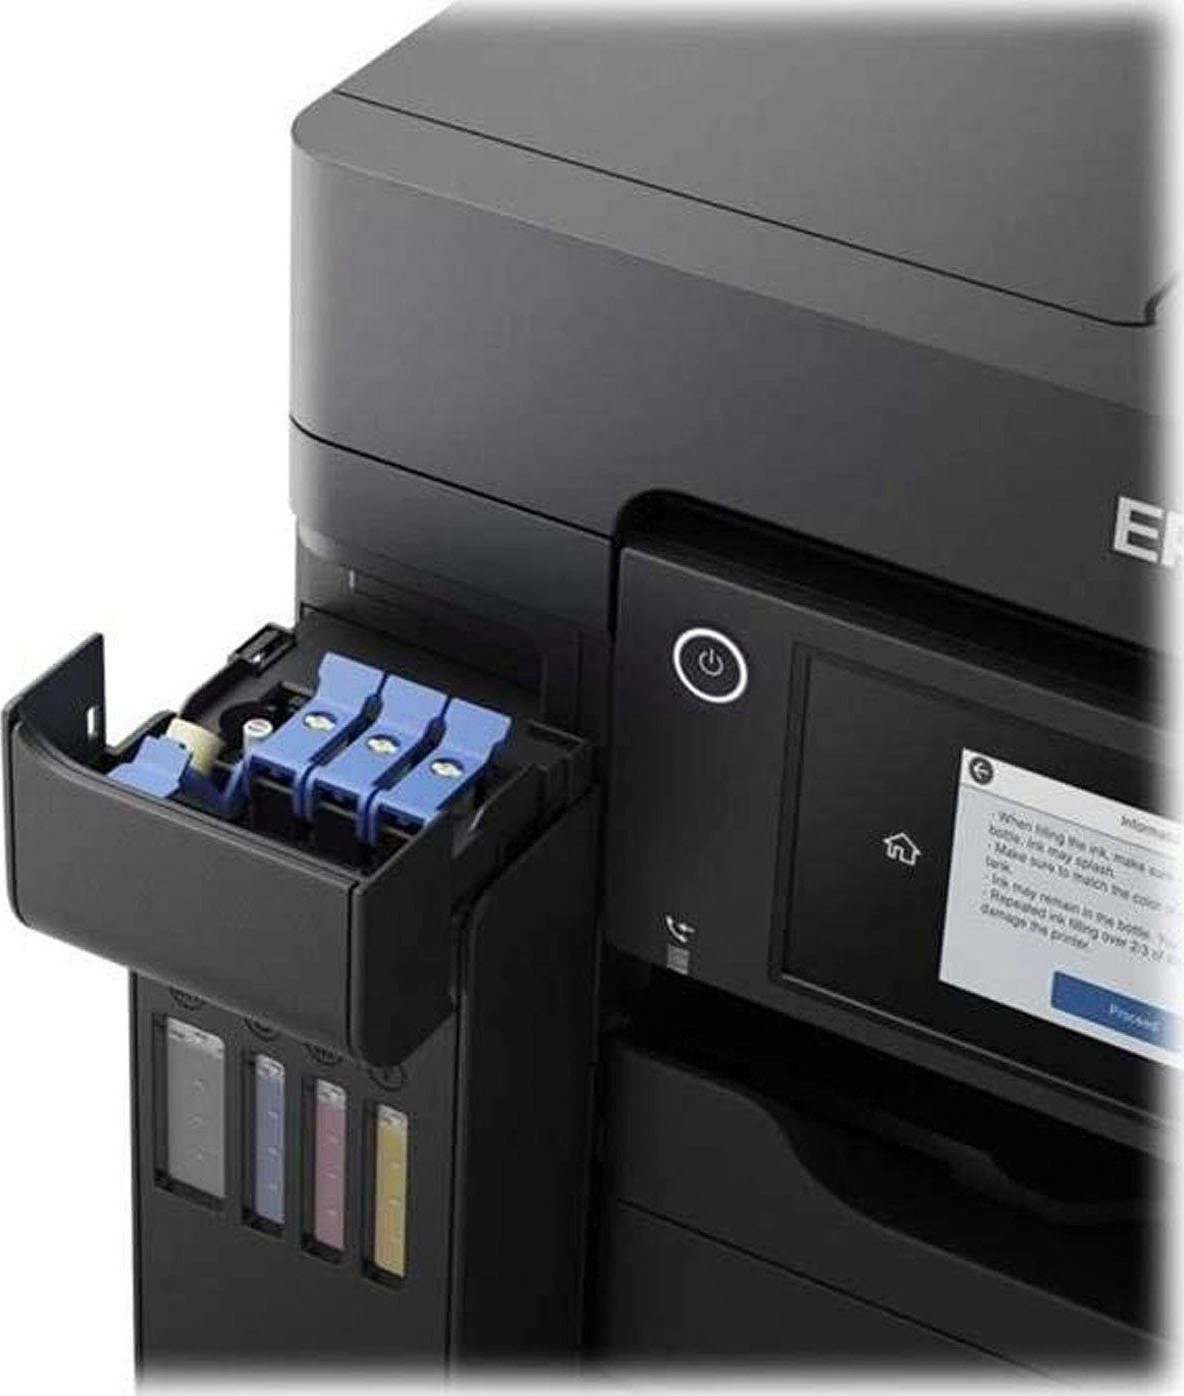 Direct) (WLAN Wi-Fi (Wi-Fi), EcoTank Epson Tintenstrahldrucker, ET-5850